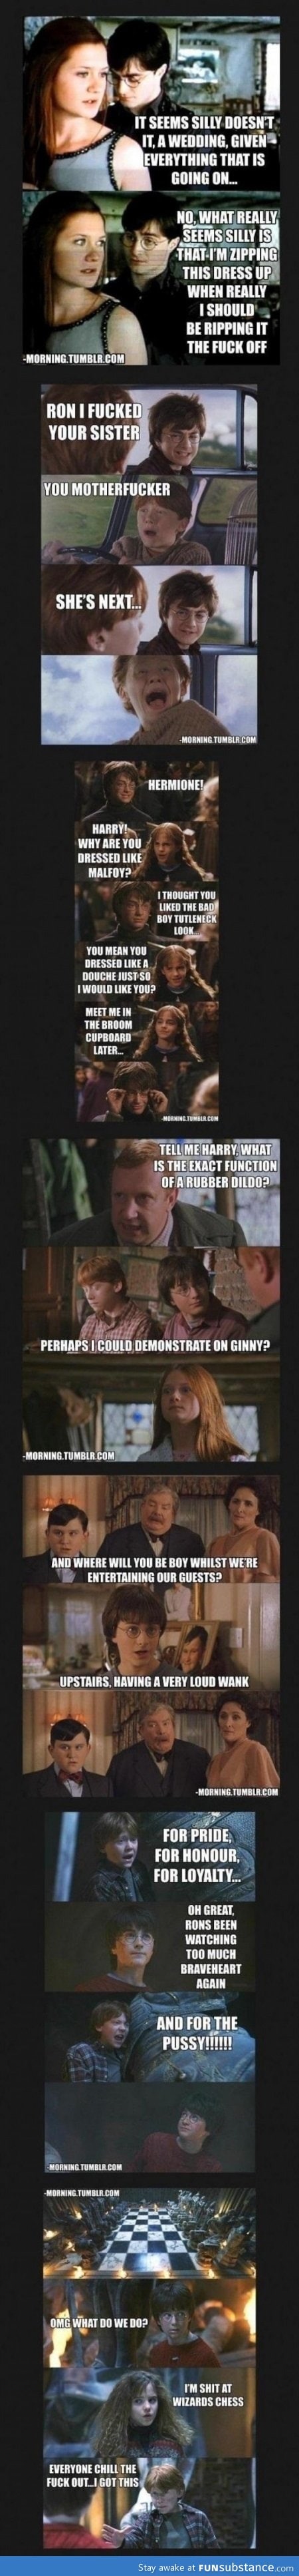 Harry Potter jokes